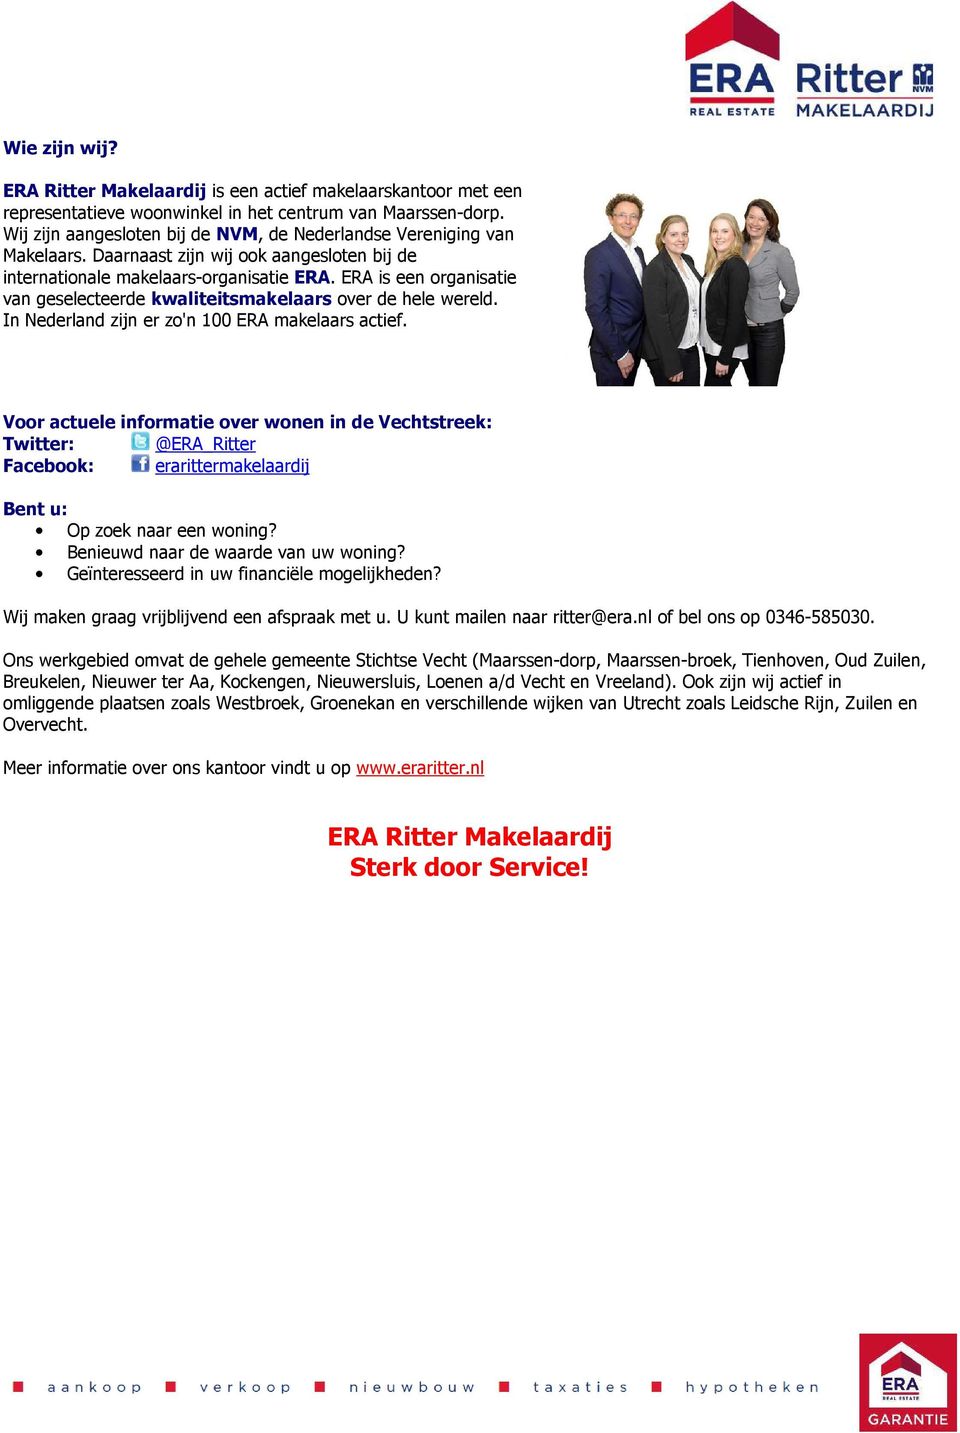 ERA is een organisatie van geselecteerde kwaliteitsmakelaars over de hele wereld. In Nederland zijn er zo'n 100 ERA makelaars actief.